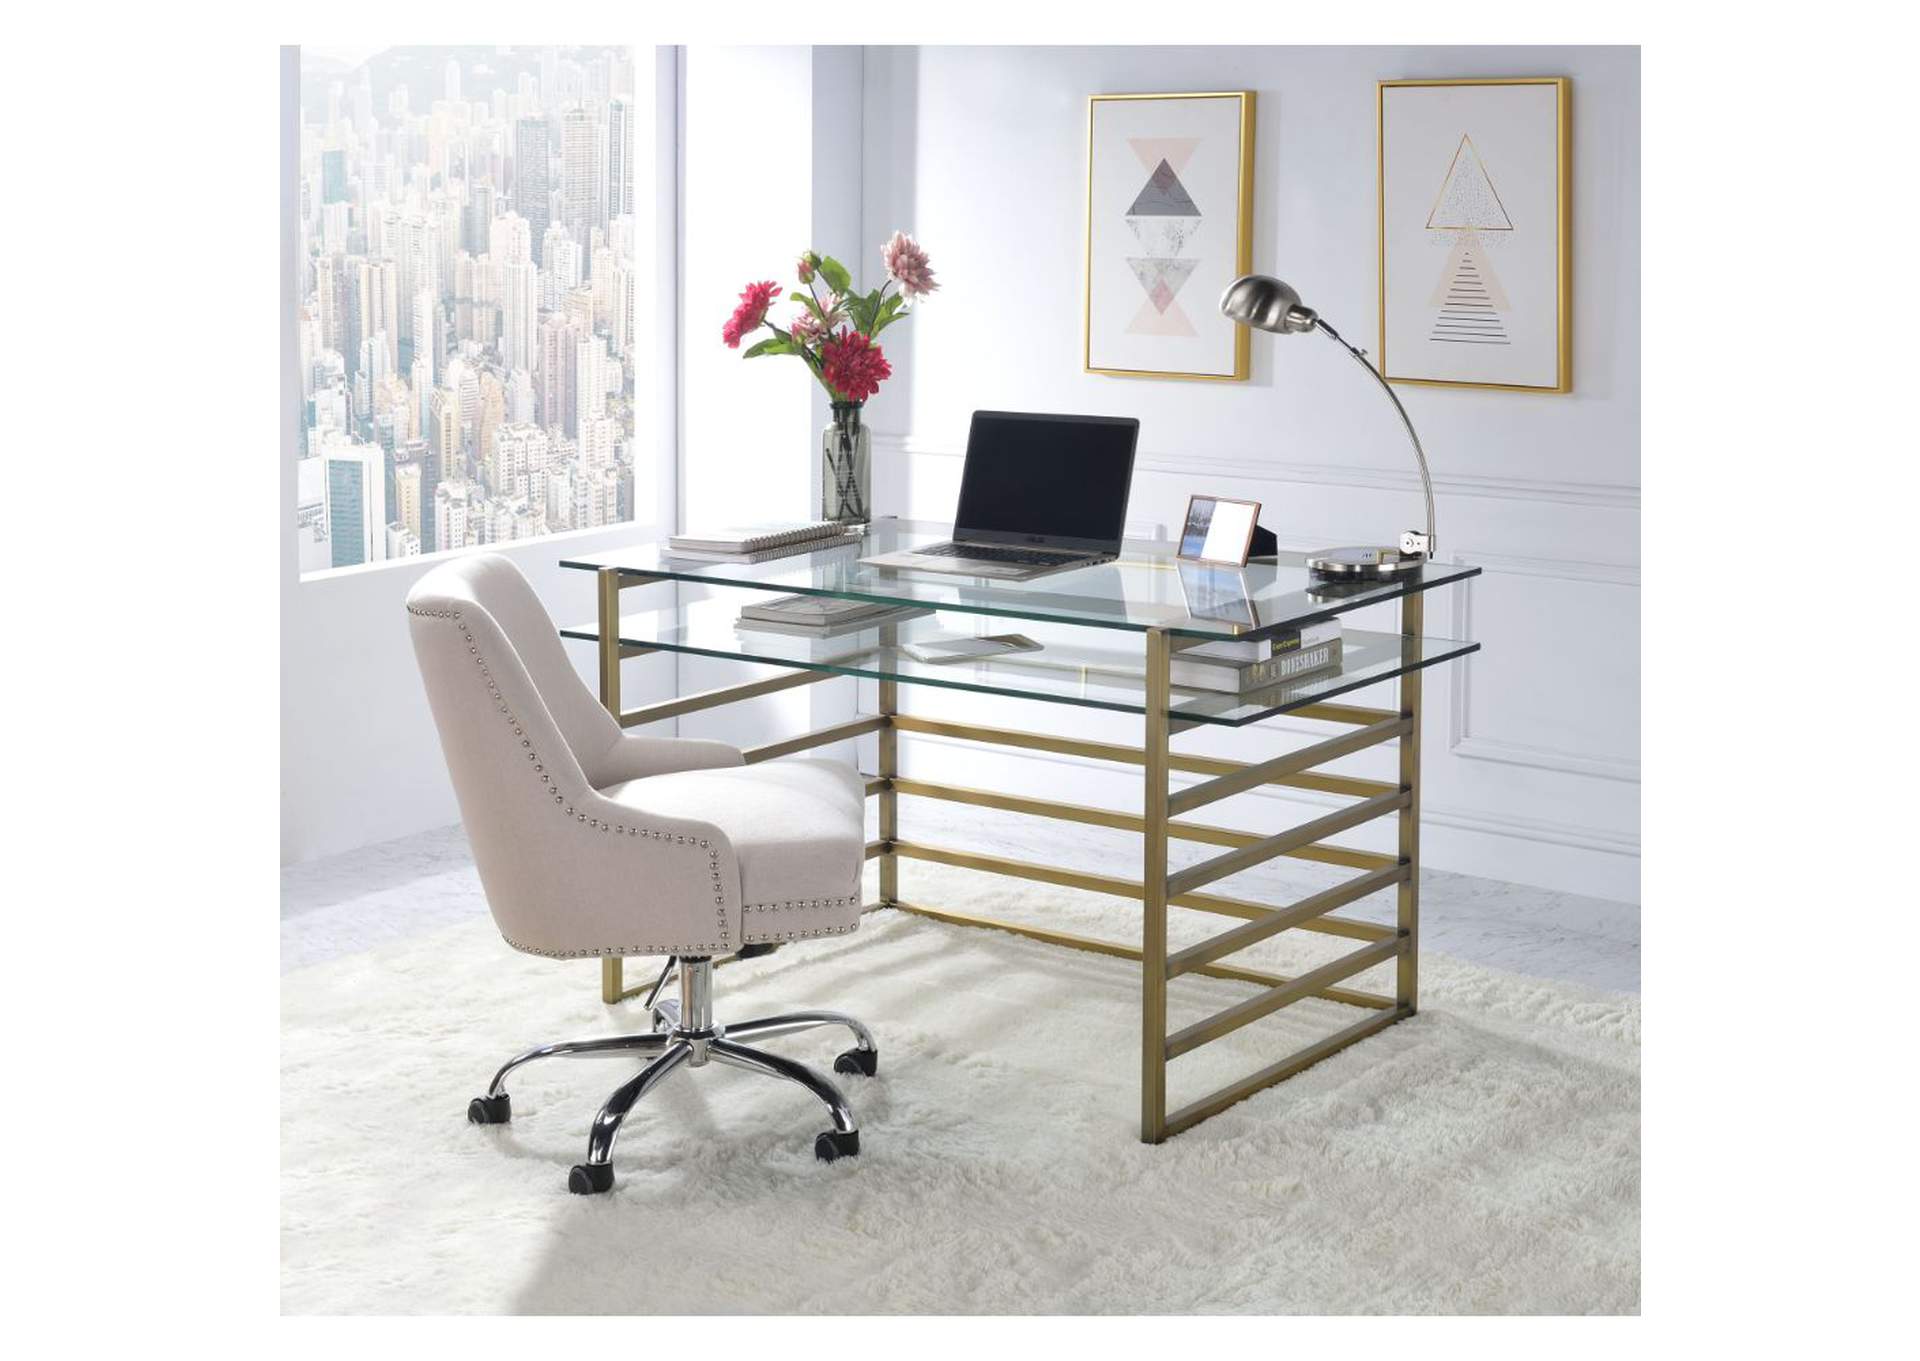 Shona Antique Gold & Clear Glass Desk,Acme